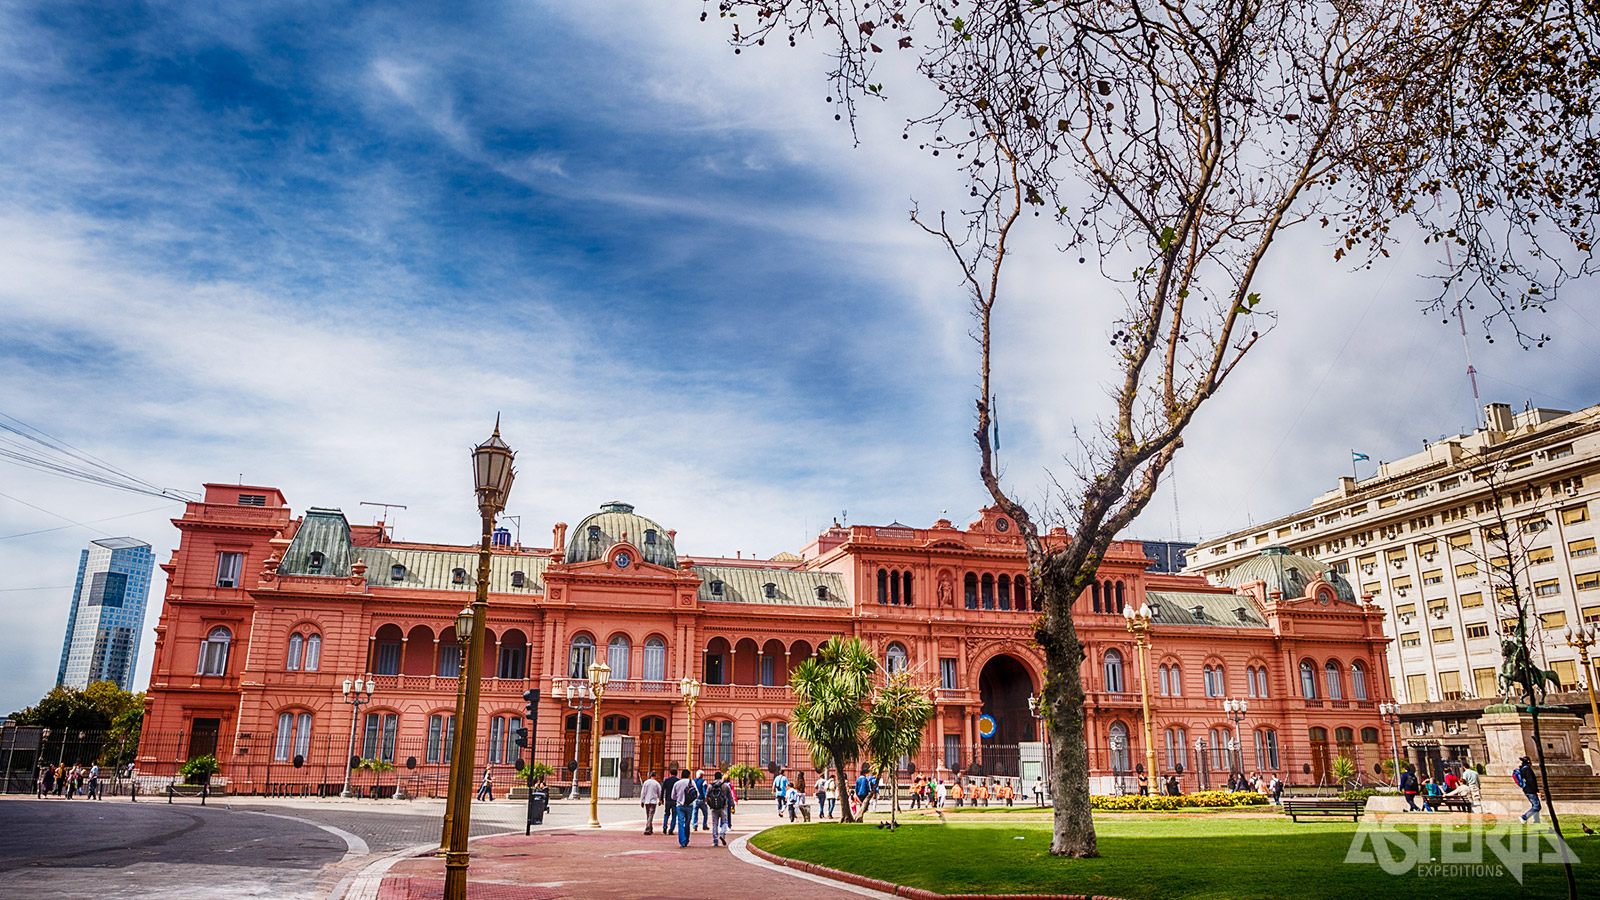 Het Casa Rosada aan de Plaza de Mayo is het werkpaleis van de Argentijnse president in de hoofdstad Buenos Aires